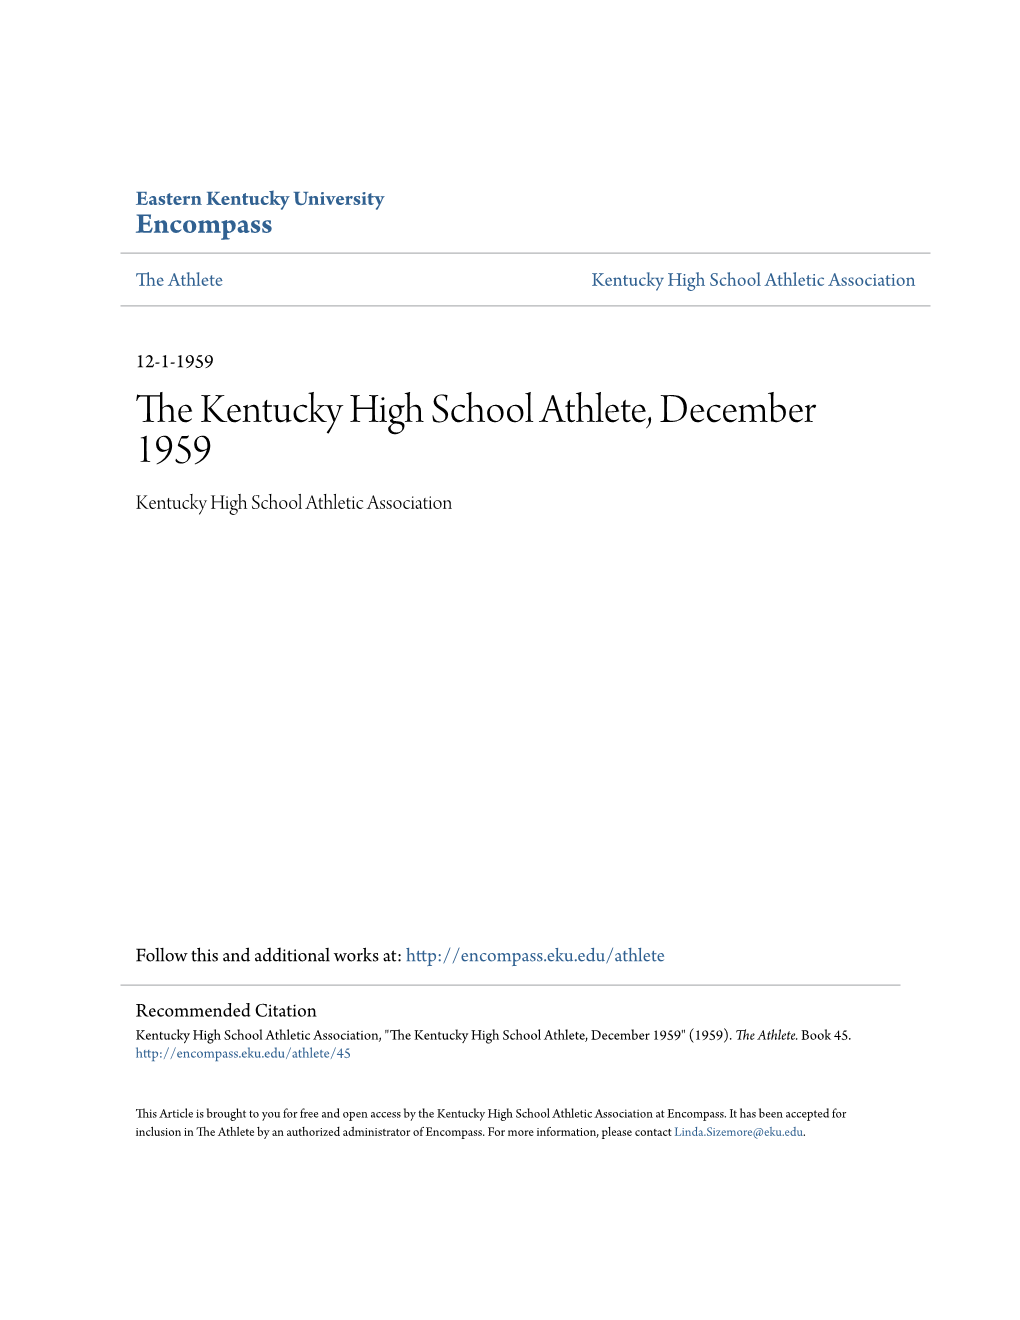 The Kentucky High School Athlete, December 1959 Kentucky High School Athletic Association